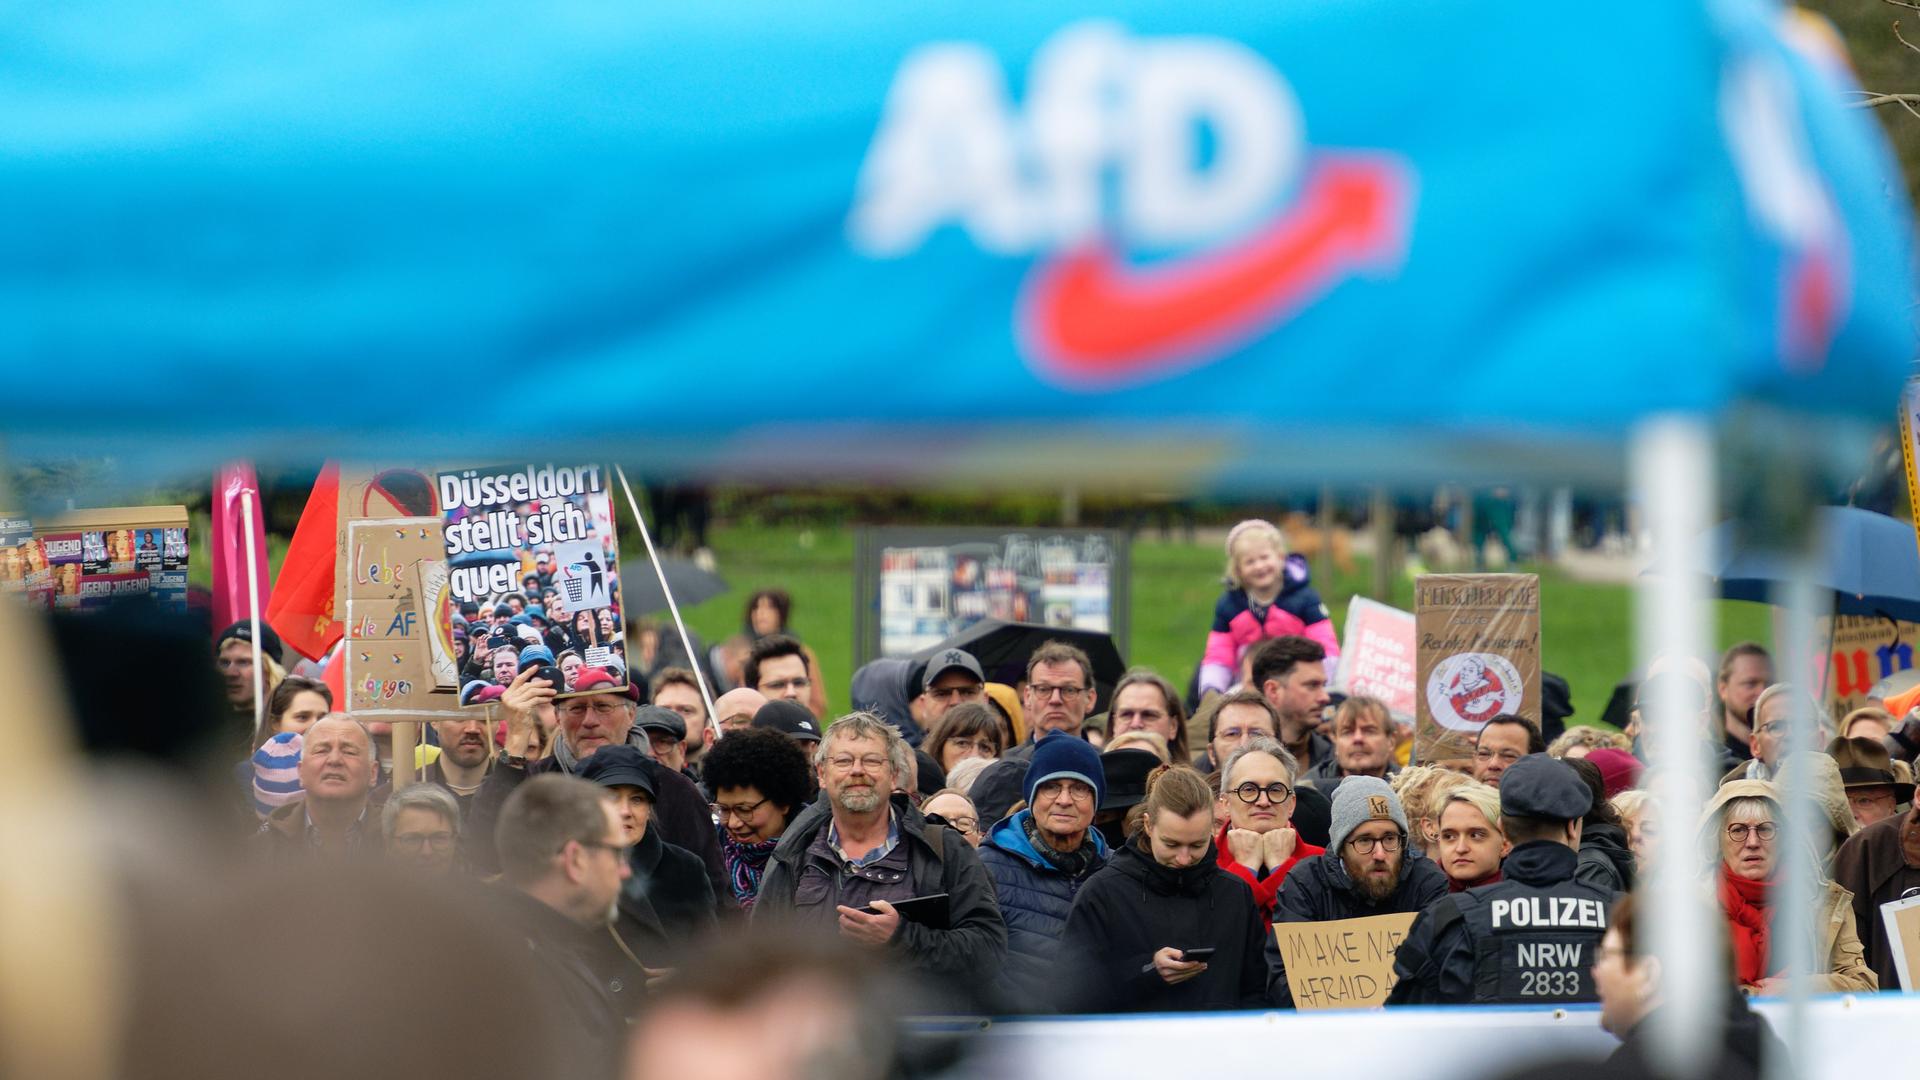 Viele Menschen stehen bei einer Demonstration in Düsseldorf hinter eine Polizeiabsperrung zusammen und halten Plakate hoch. Im Vordergrund ist ein Pavillon mit dem Logo der AfD.